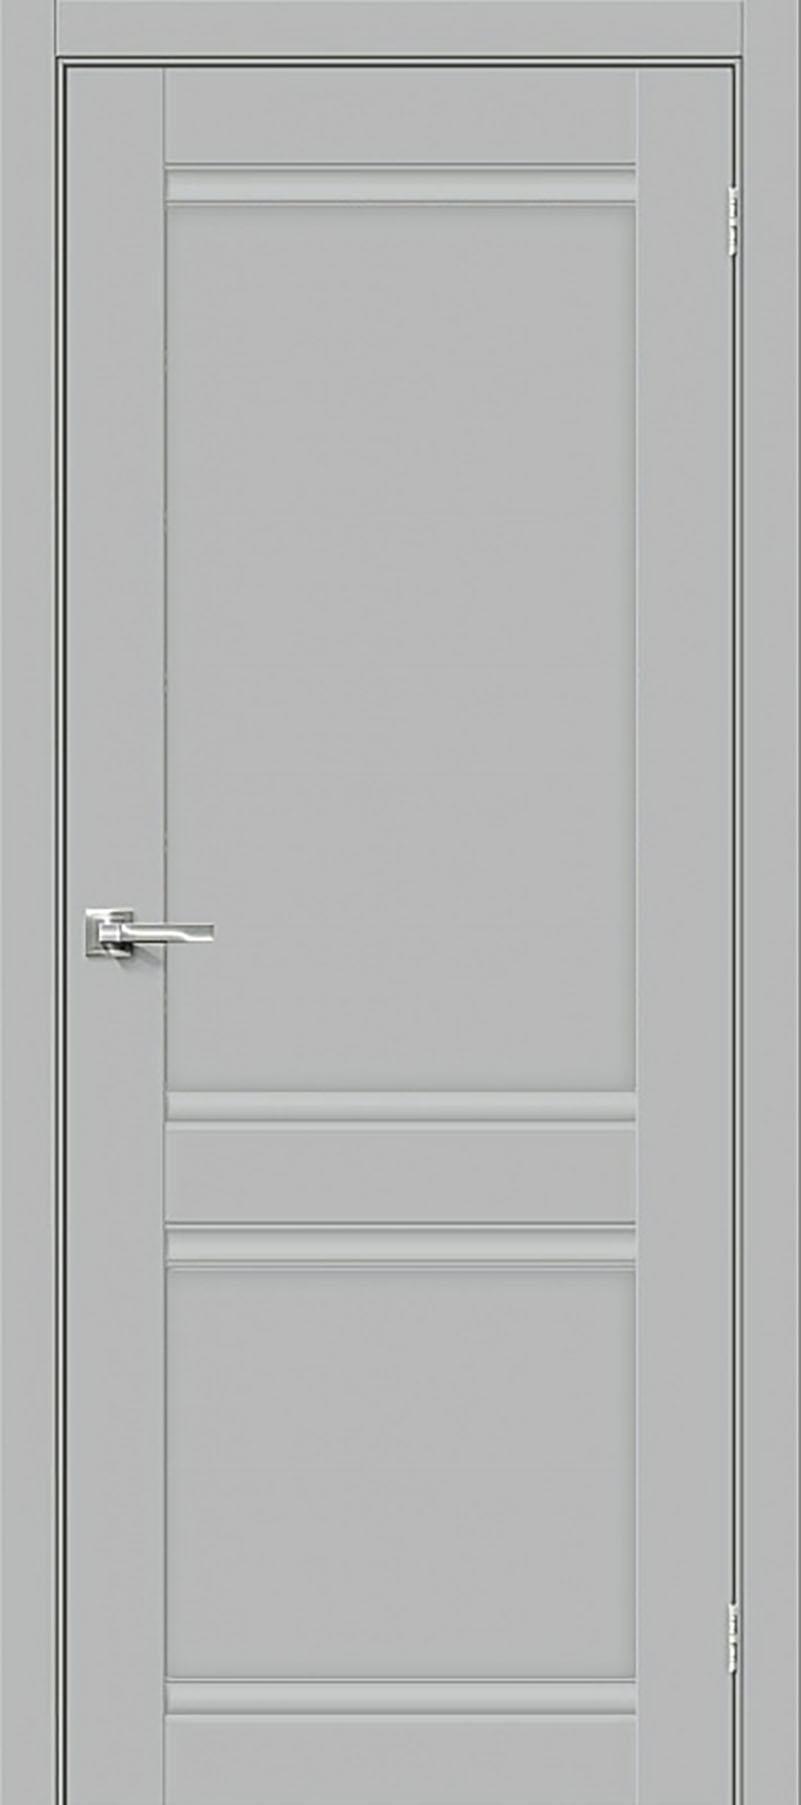 90910815 Межкомнатная дверь Парма 1211 глухая без замка и петель в комплекте 200x60см серый STLM-0420344 UBERTURE